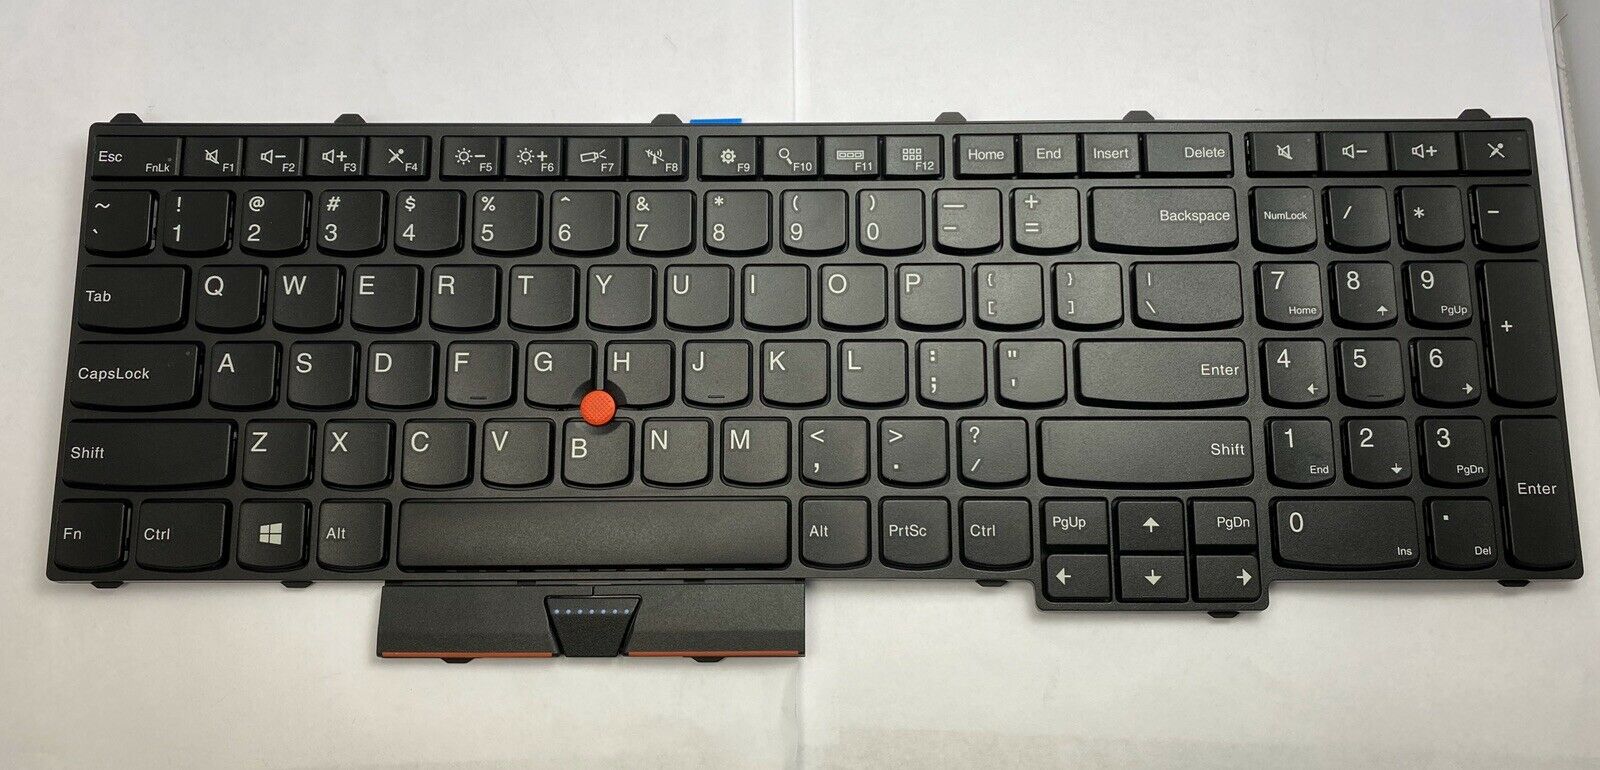 Bàn phím - Keyboard Lenovo ThinkPad P50 Keyboard P70